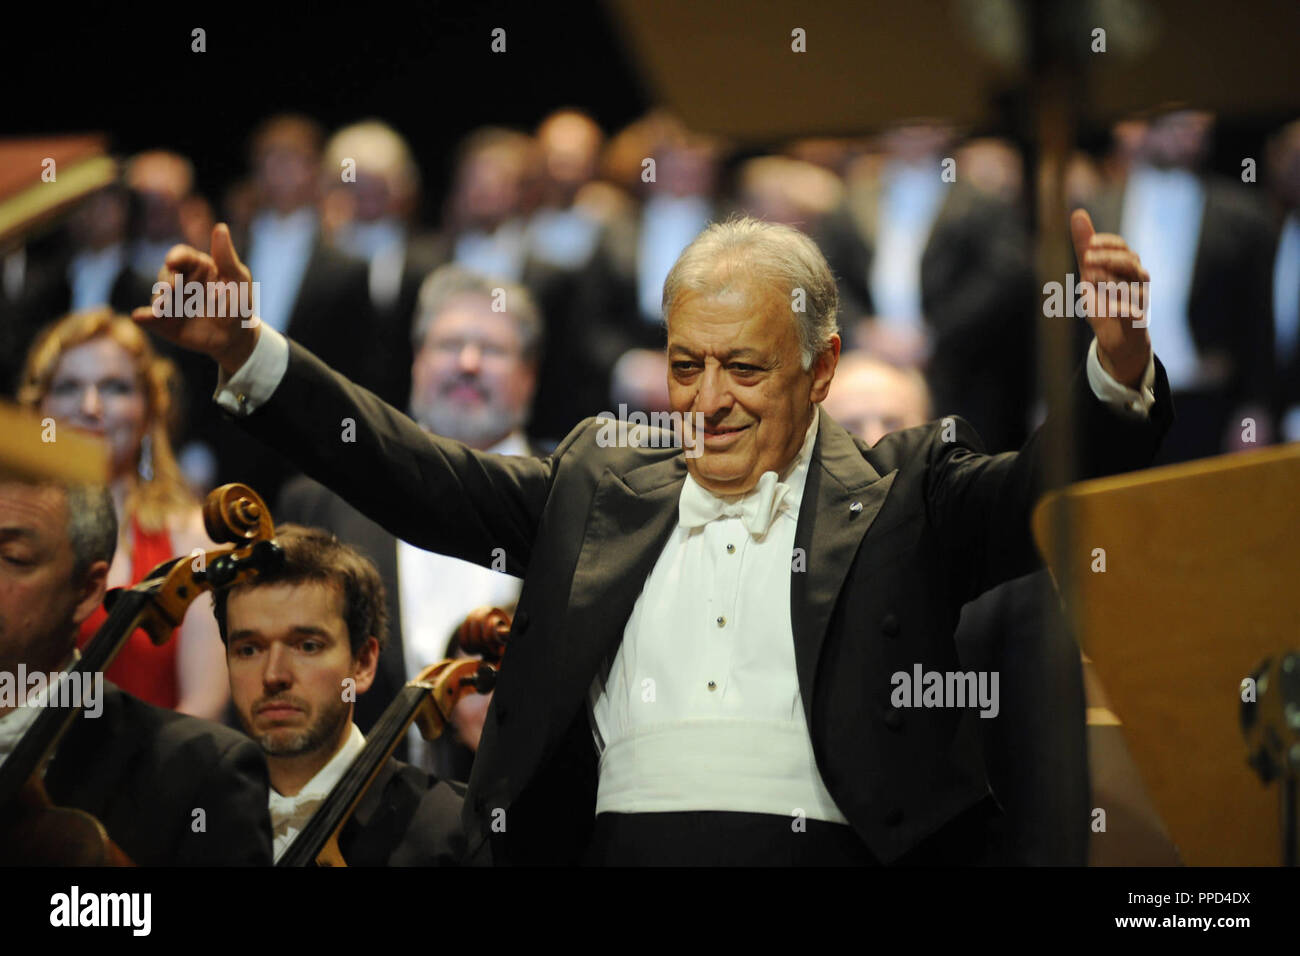 La direzione di Zubin Mehta conduce il Gurre-Lieder di Arnold Schoenberg nella Koenigssaal del Monaco di Baviera Opera House. Il conduttore viene quindi assegnato la medaglia Meistersinger dell'Opera di Stato bavarese. Foto Stock